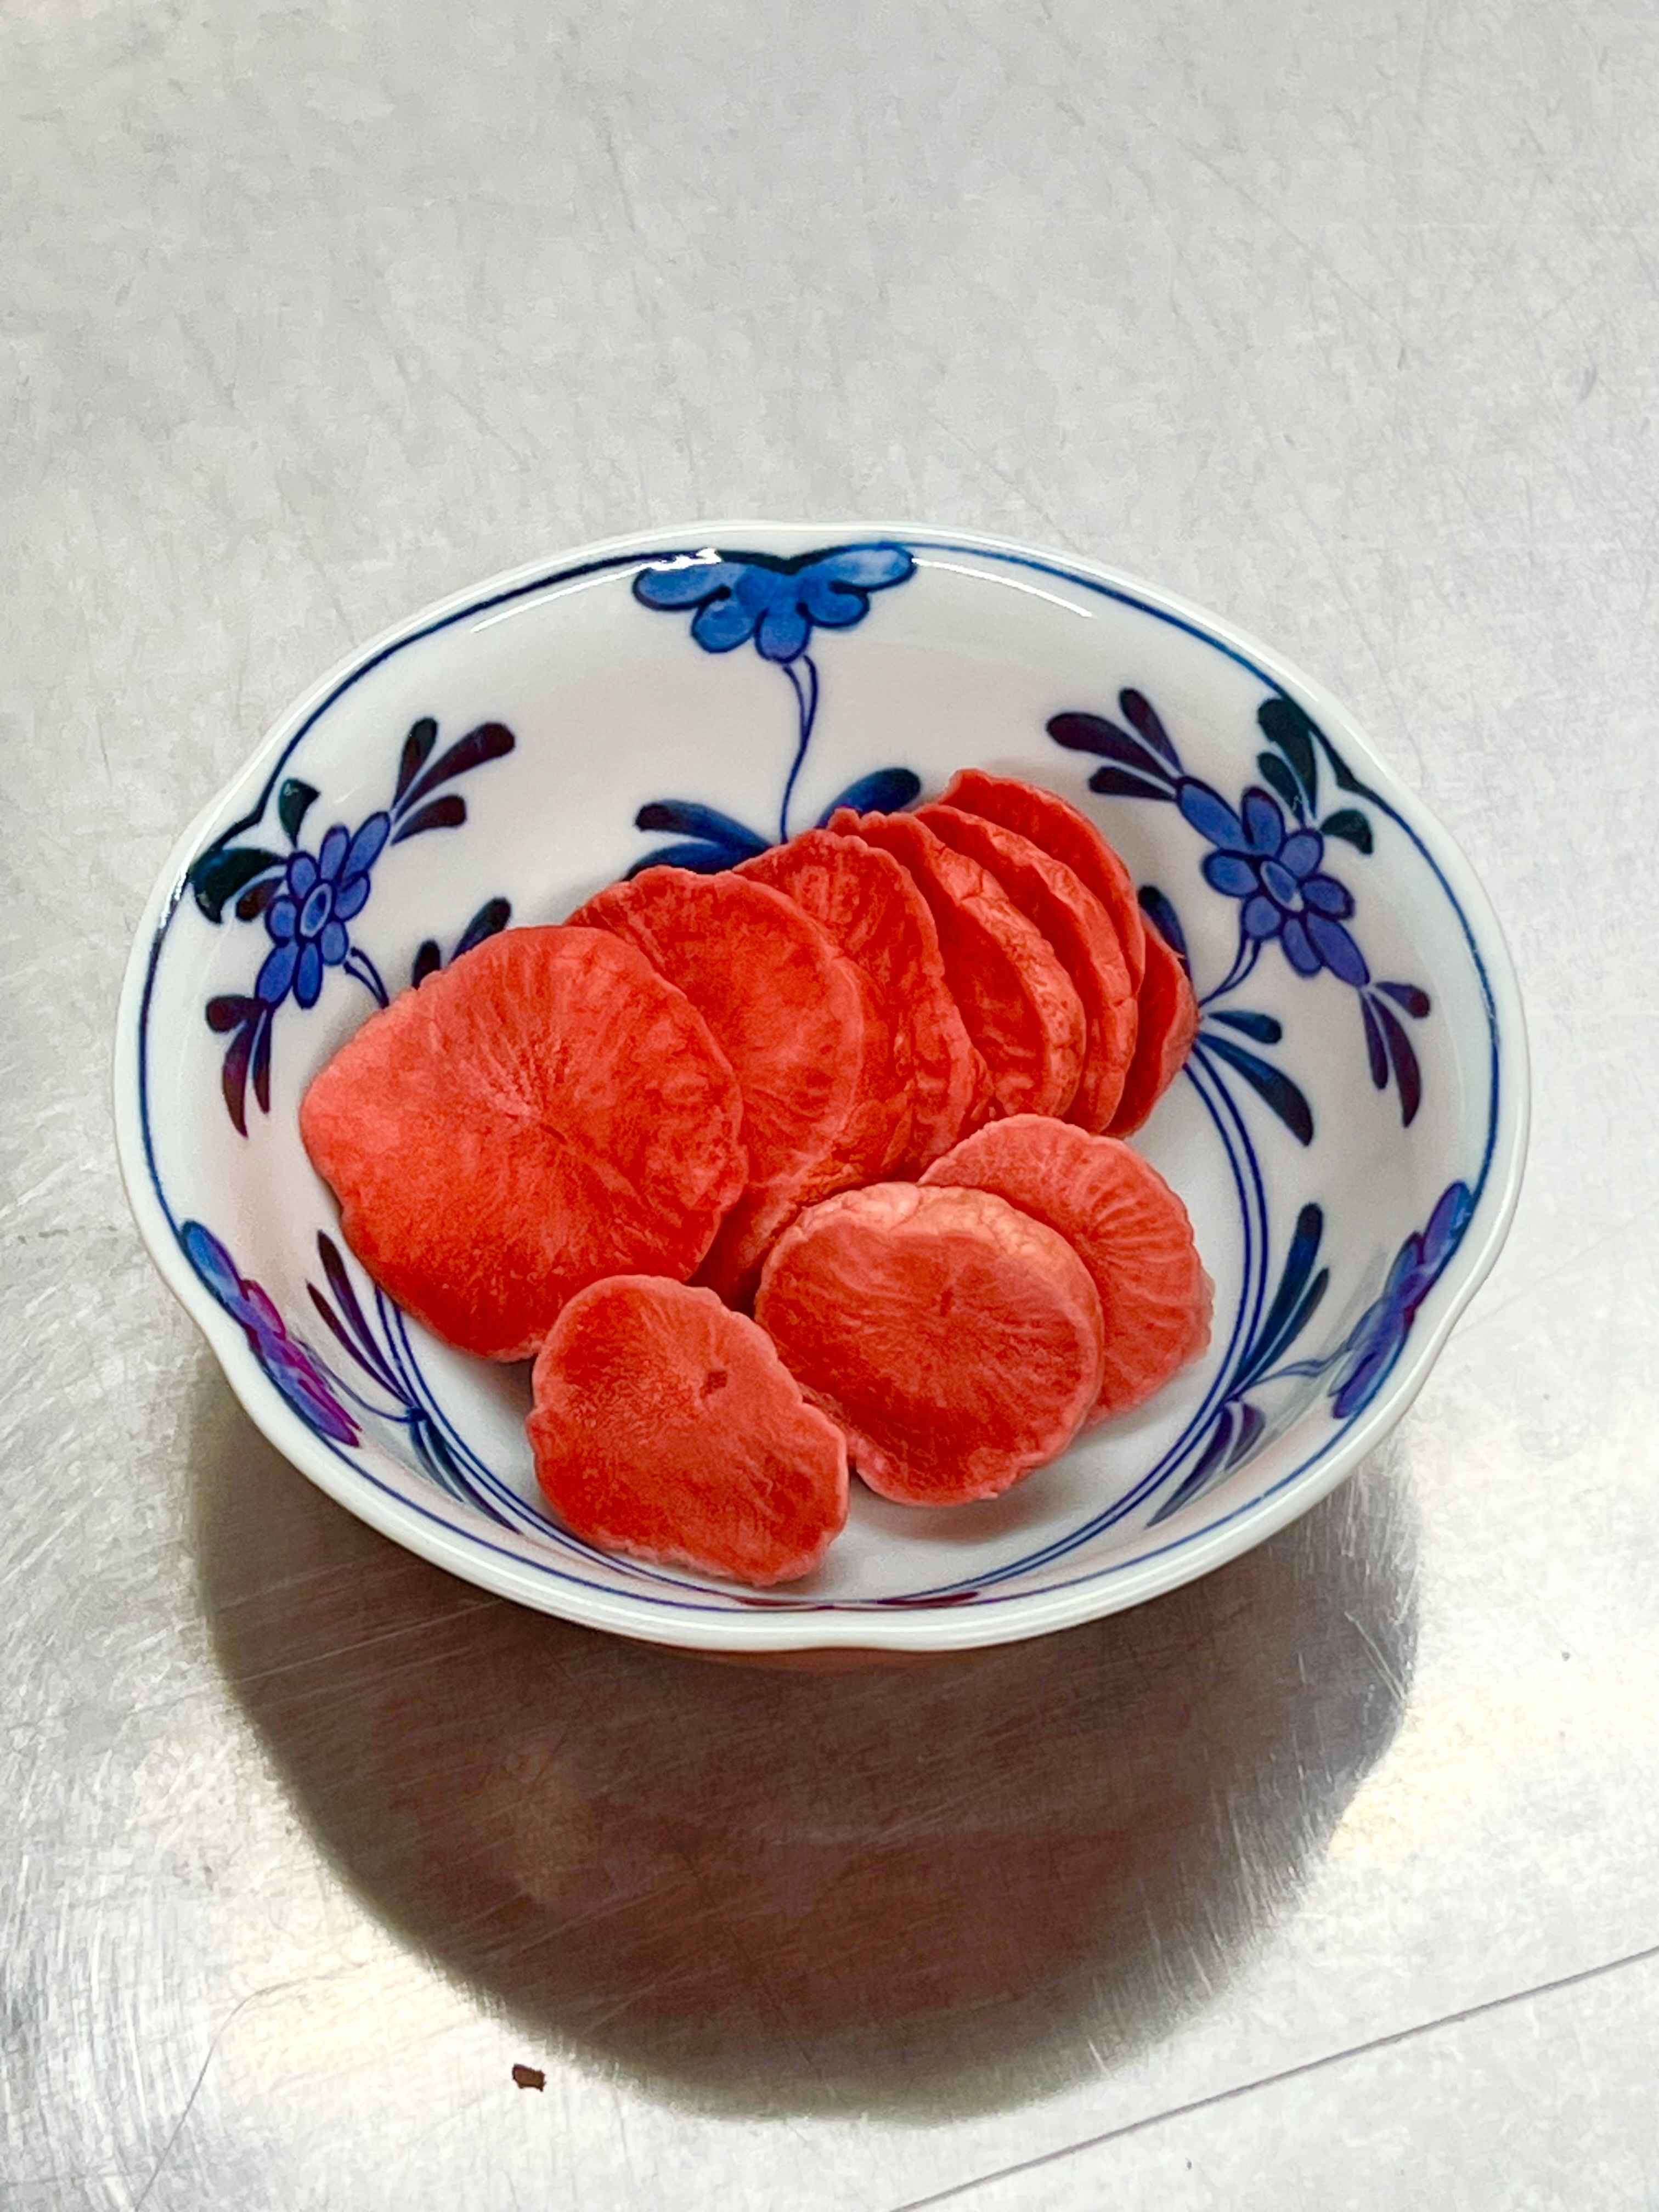 高野山麓精進野菜赤かぶ漬けとロマネスコのピクルス(無添加) 赤かぶ漬け100g(3袋)とロマネスコピクルス(2袋)のセット